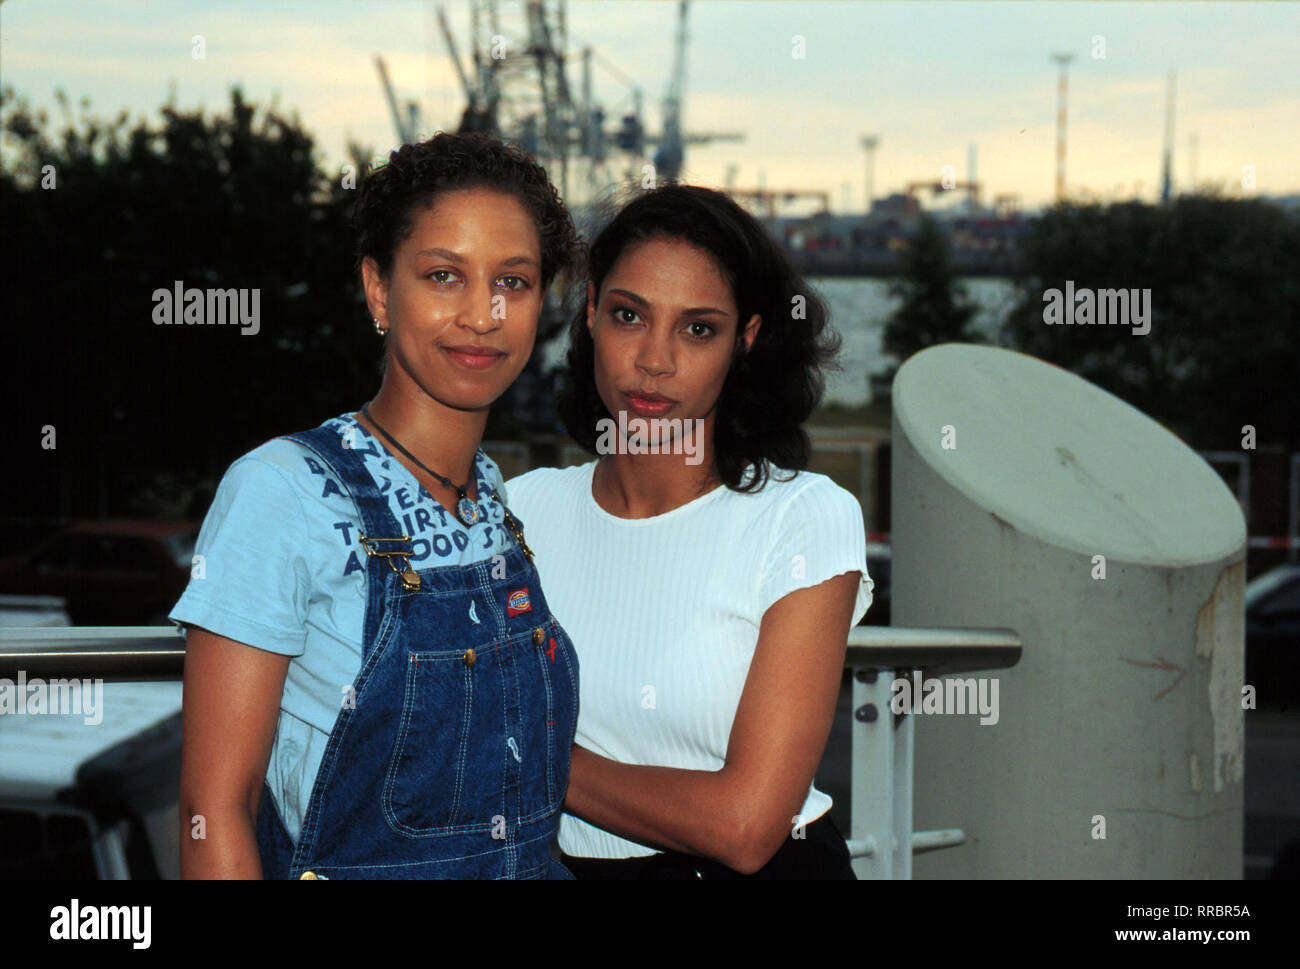 Nabou (KATI STÜDEMANN) und Kim (CHANTAL de FREITAS) sind die beiden Hauptdarstellerinnen. Die eine arbeitslose Lebenskünstlerin mit dem Wunsch, ihre Ex-Freundin Katja zurückzugewinnen, die andere Karrierefrau auf dem Weg nach oben. Eigentlich haben sie nichts gemeinsam, außer der Tatsache, daß sie als Afrodeutsche dem alltäglichen Rassismus ausgesetzt sind... / Überschrift: ALLES WIRD GUT / D 1997 Stock Photo